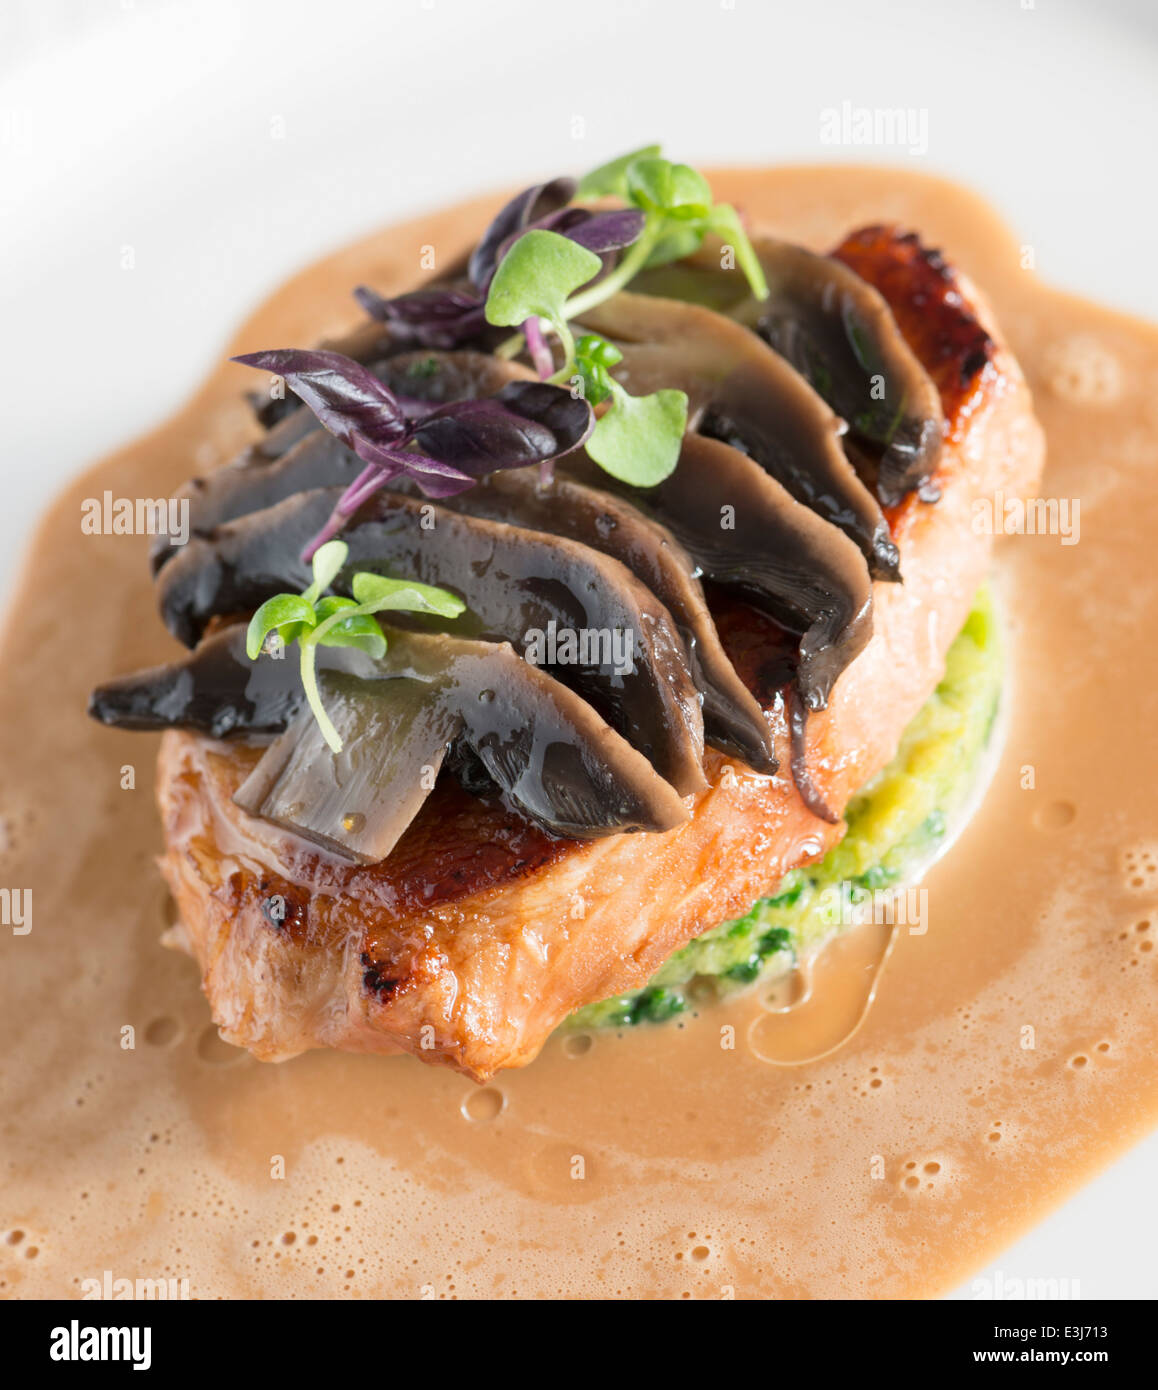 Filetto di maiale stroganoff servita in un ristorante raffinato. Foto Stock